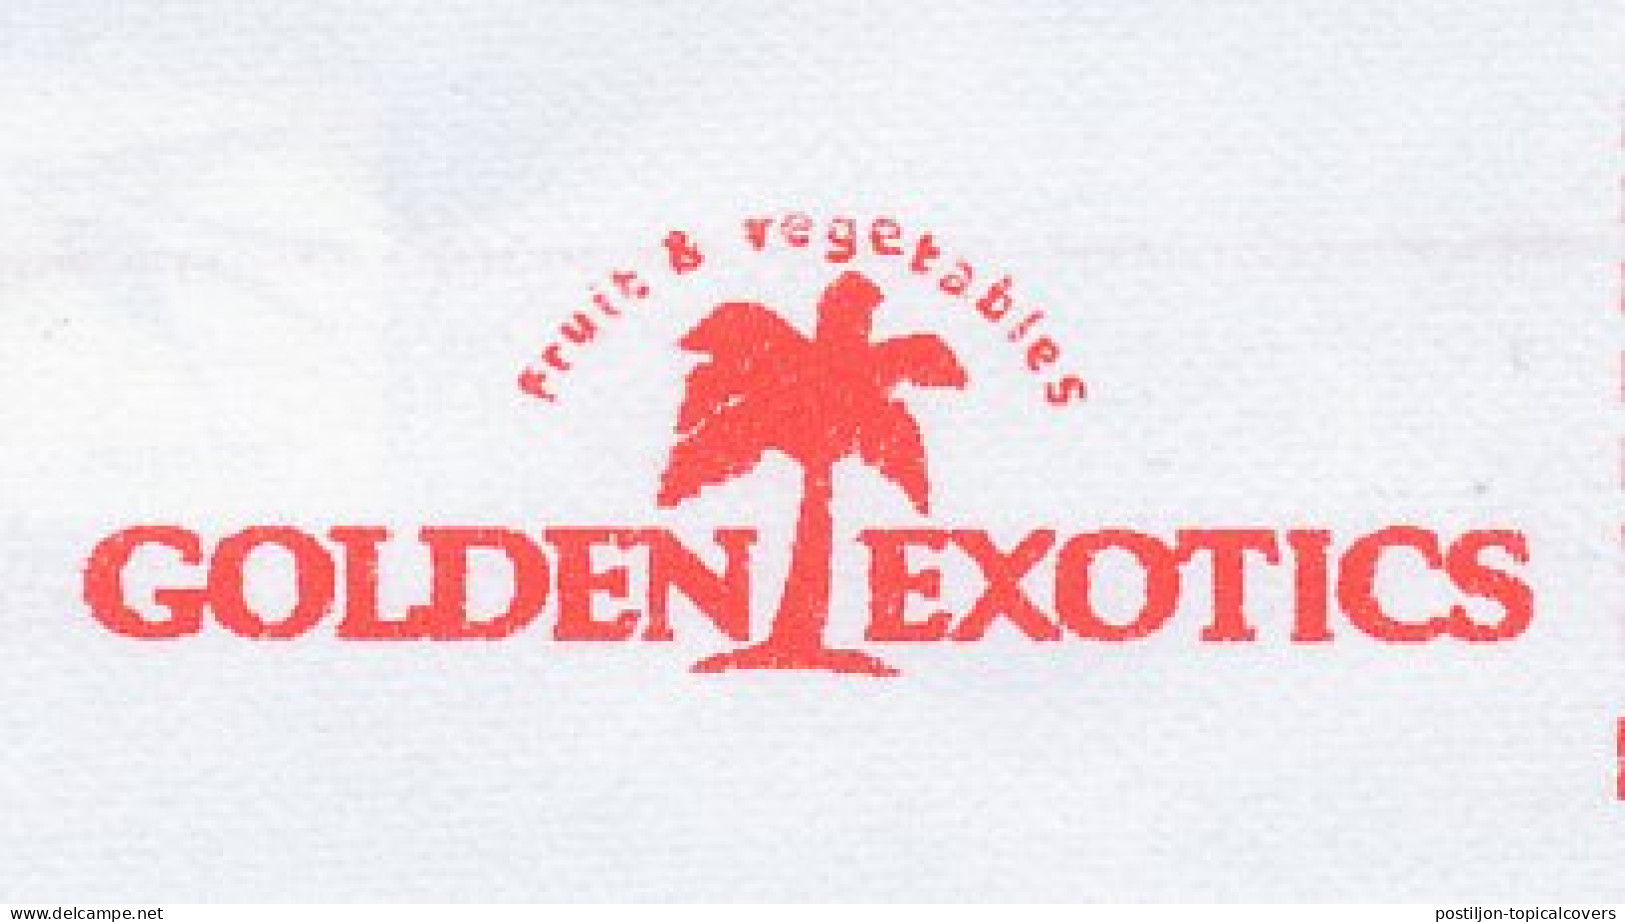 Meter Cut Netherlands 2001 Palm Tree - Fruit - Vegetables - Golden Exotics - Arbres